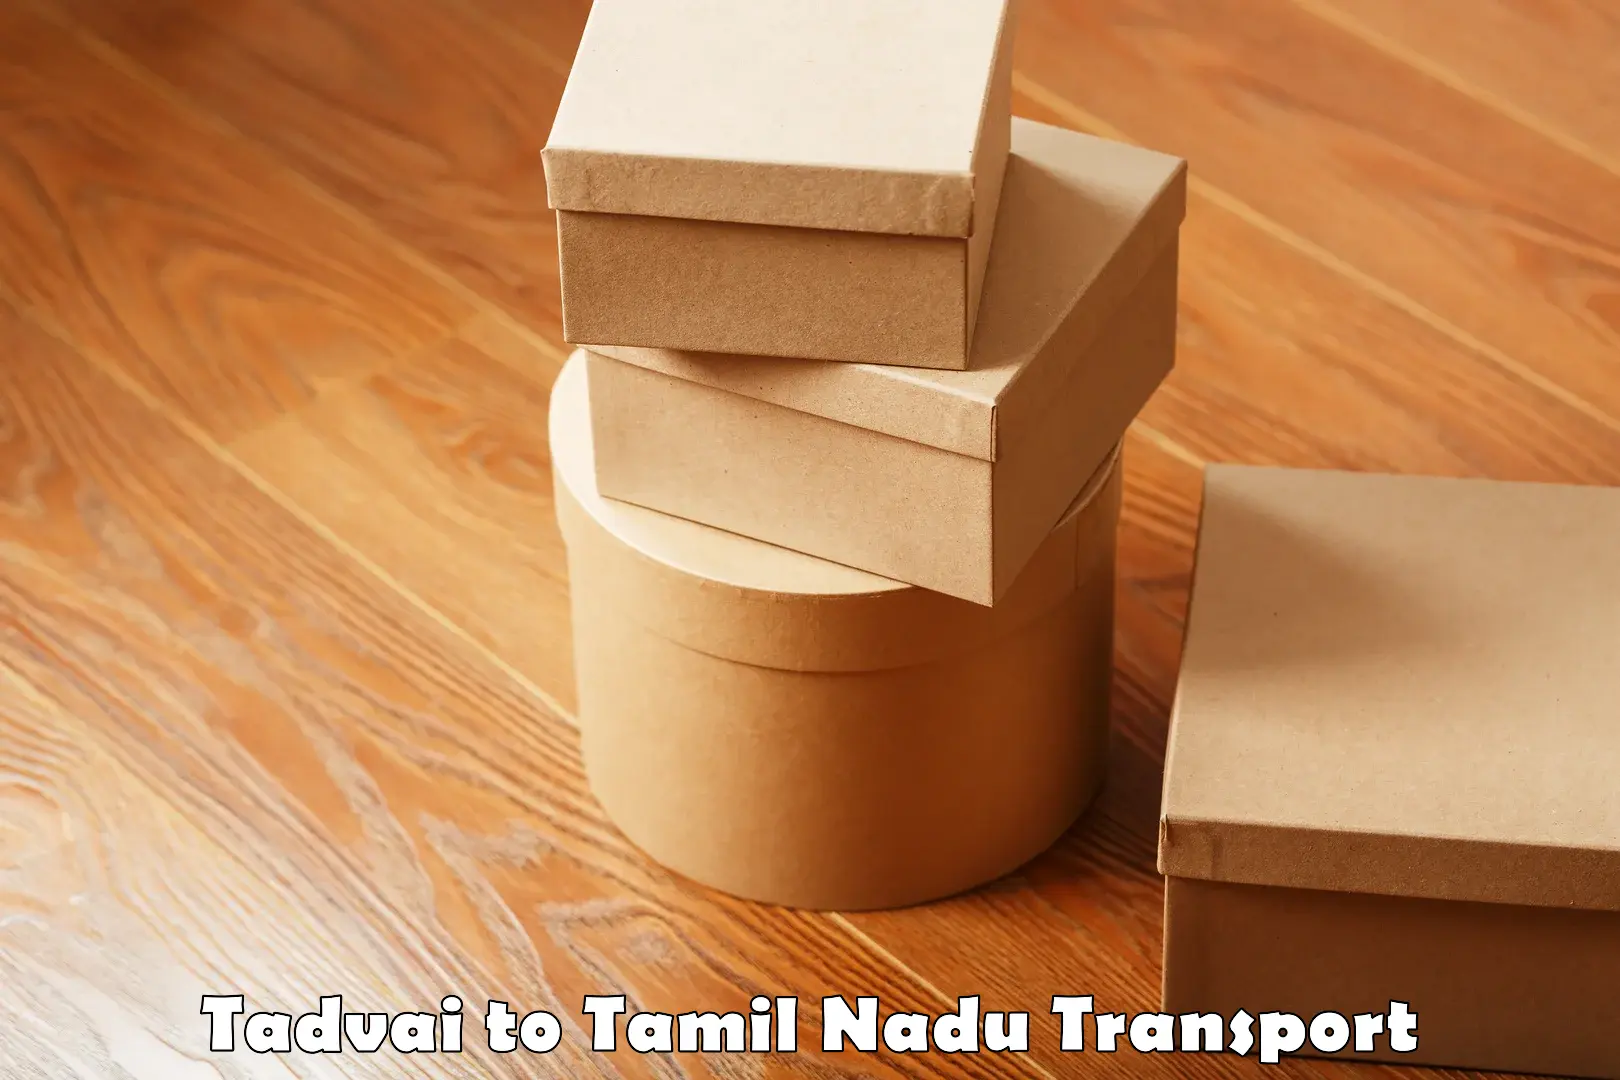 Domestic transport services Tadvai to Tamil Nadu